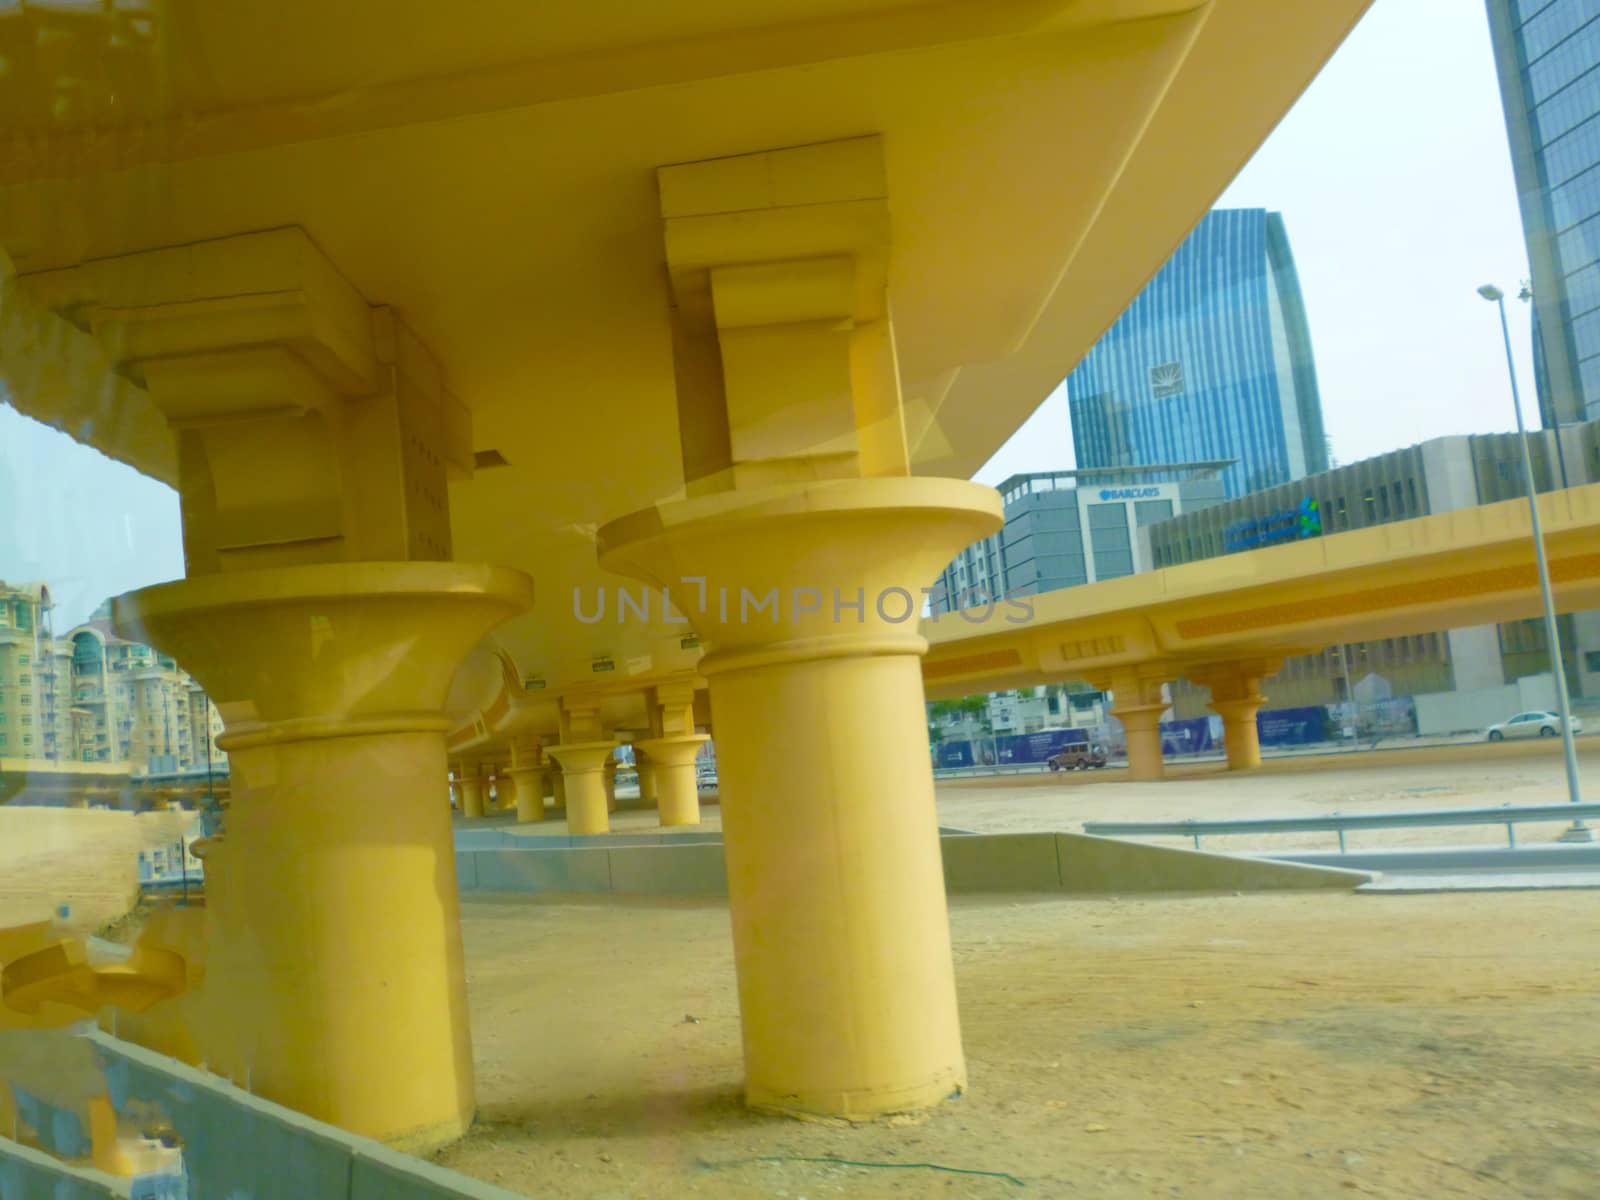 under the concrete bridge by gswagh71